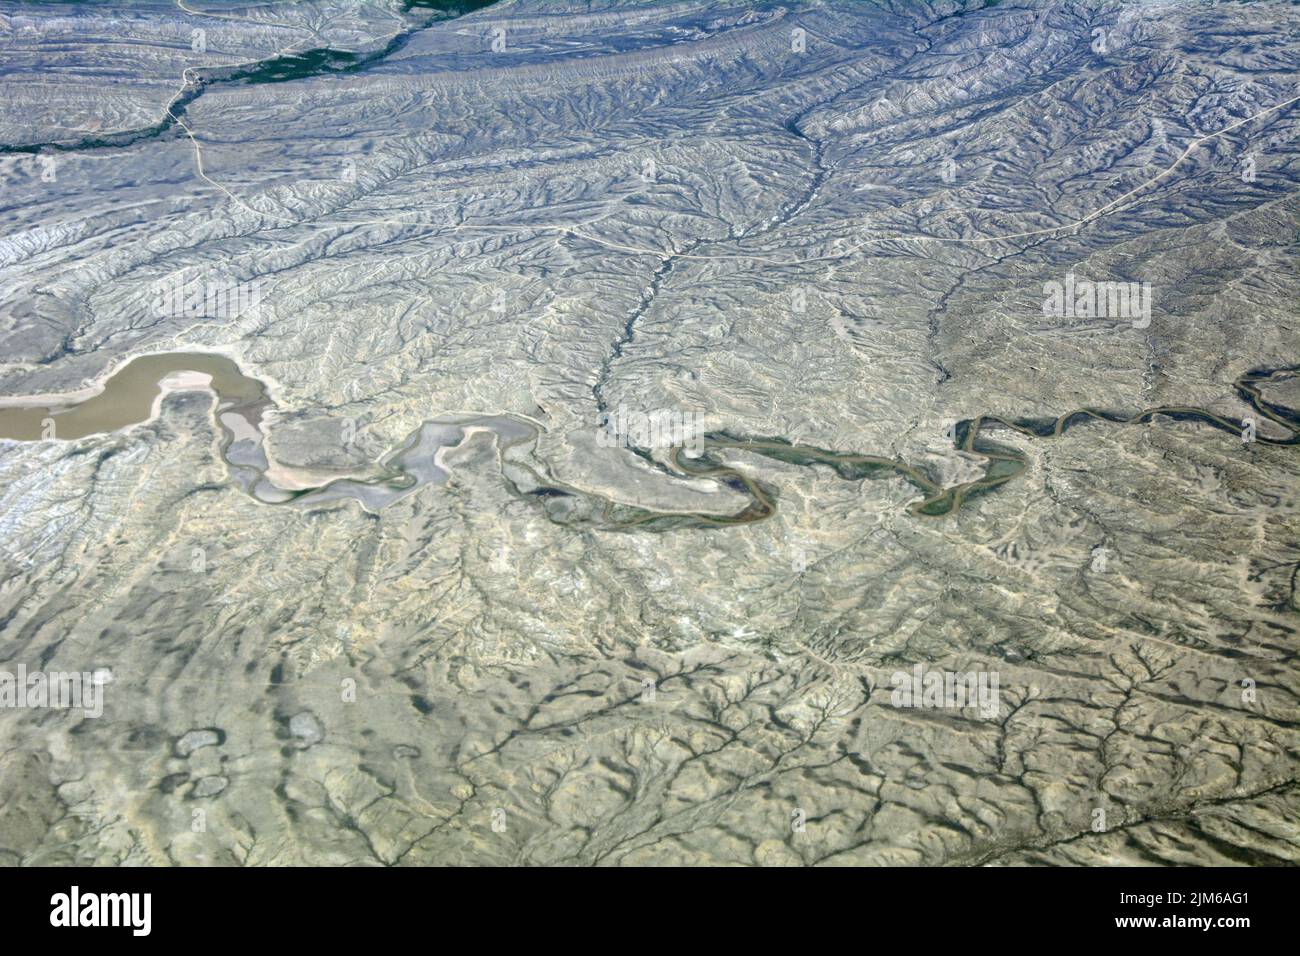 Vista aérea del río Medicine Bow, un afluente del North Platte, en el alto desierto semiárido del Condado de Carbon, al sur de Wyoming, Estados Unidos Foto de stock